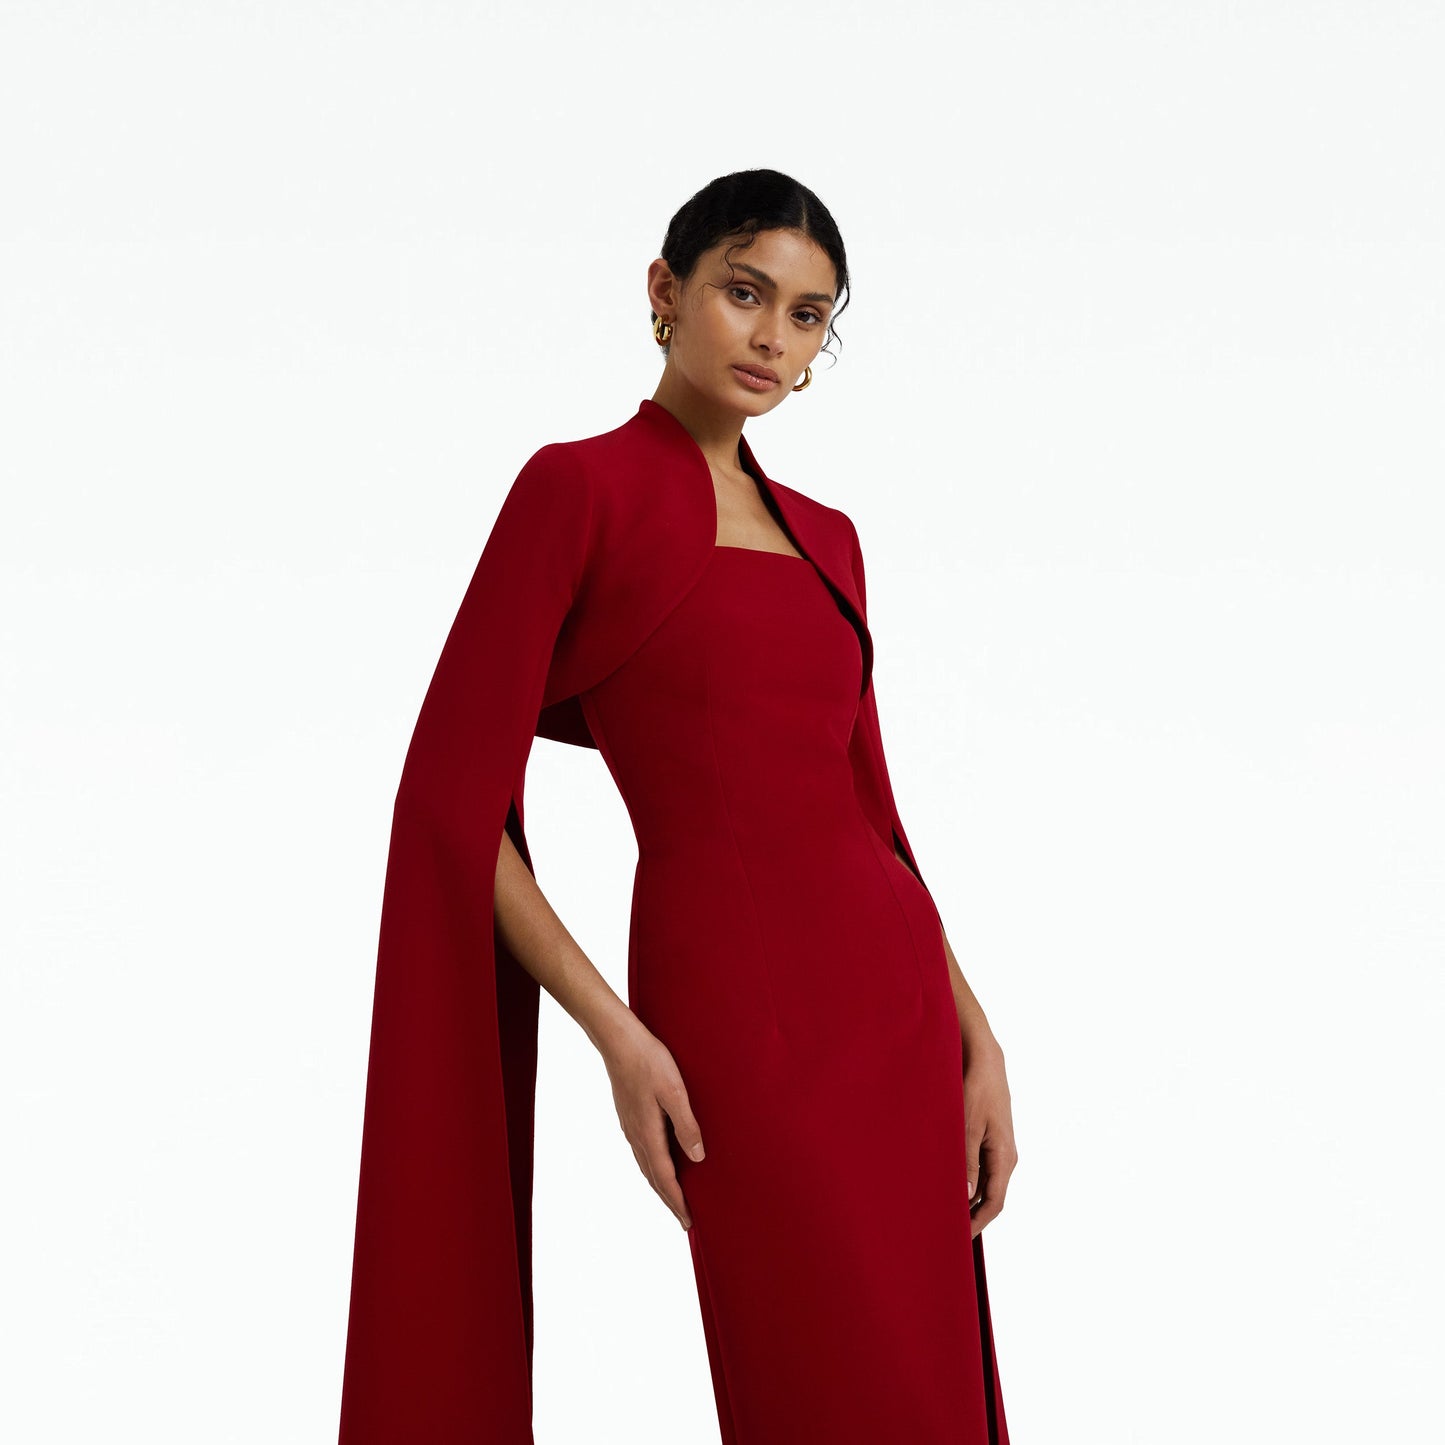 Amari Azalea Red Bolero With Soshin Dress